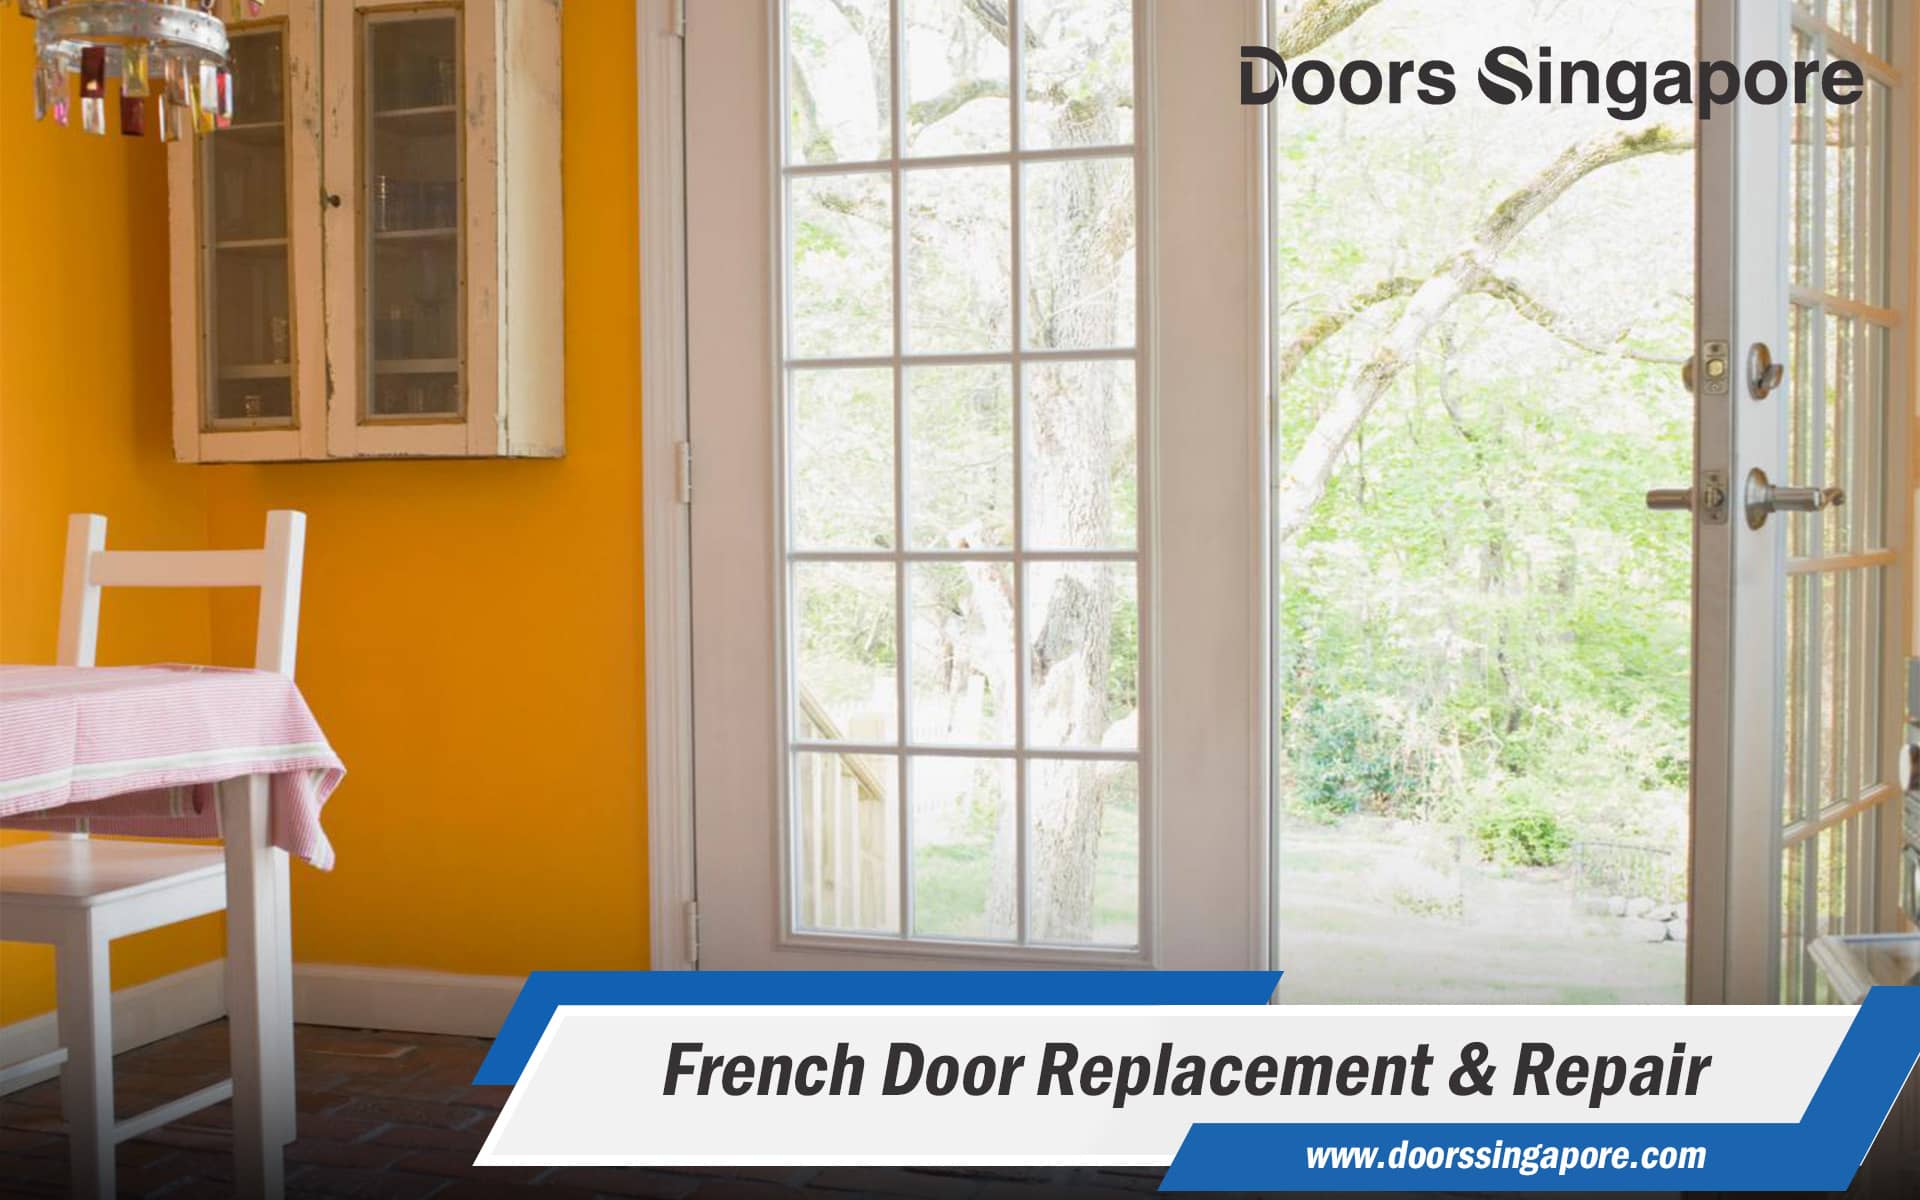 French Door Replacement & Repair